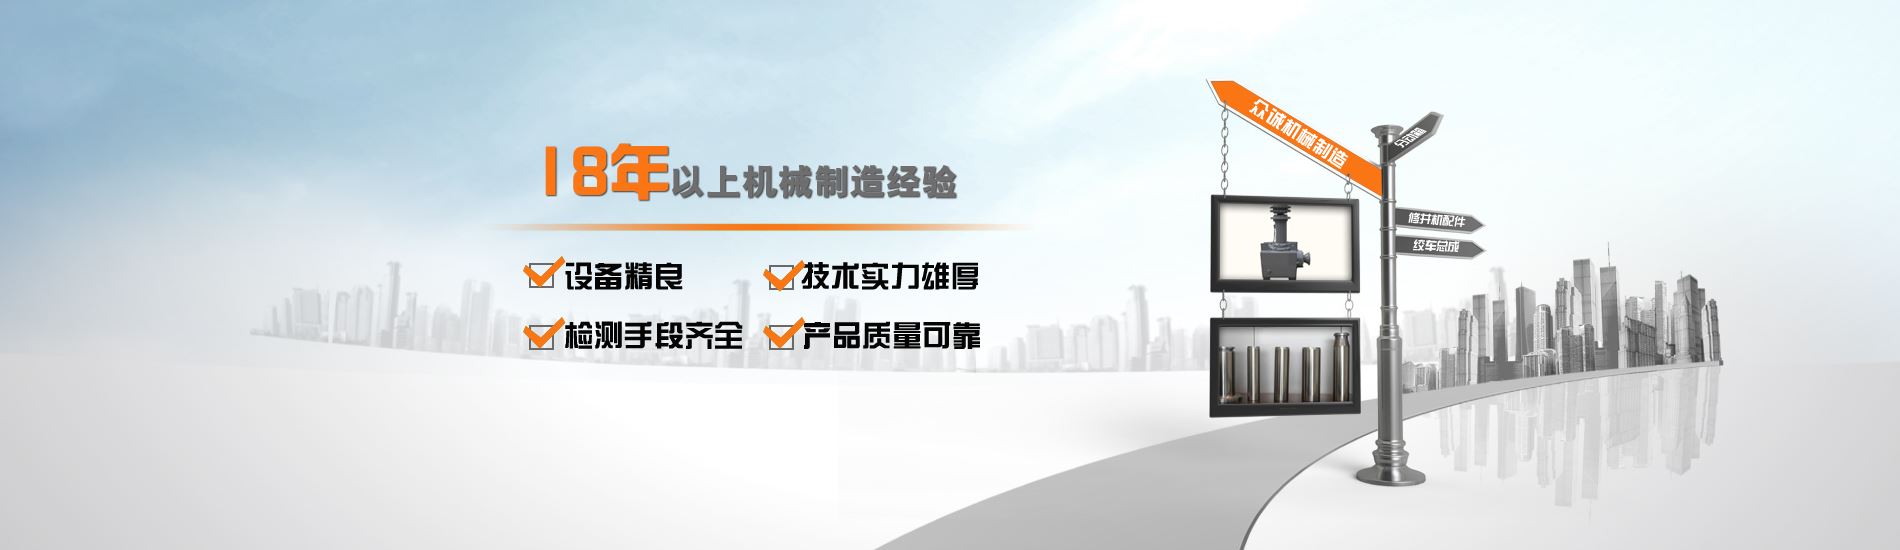 pg娱乐电子游戏网站·「中国」官方网站